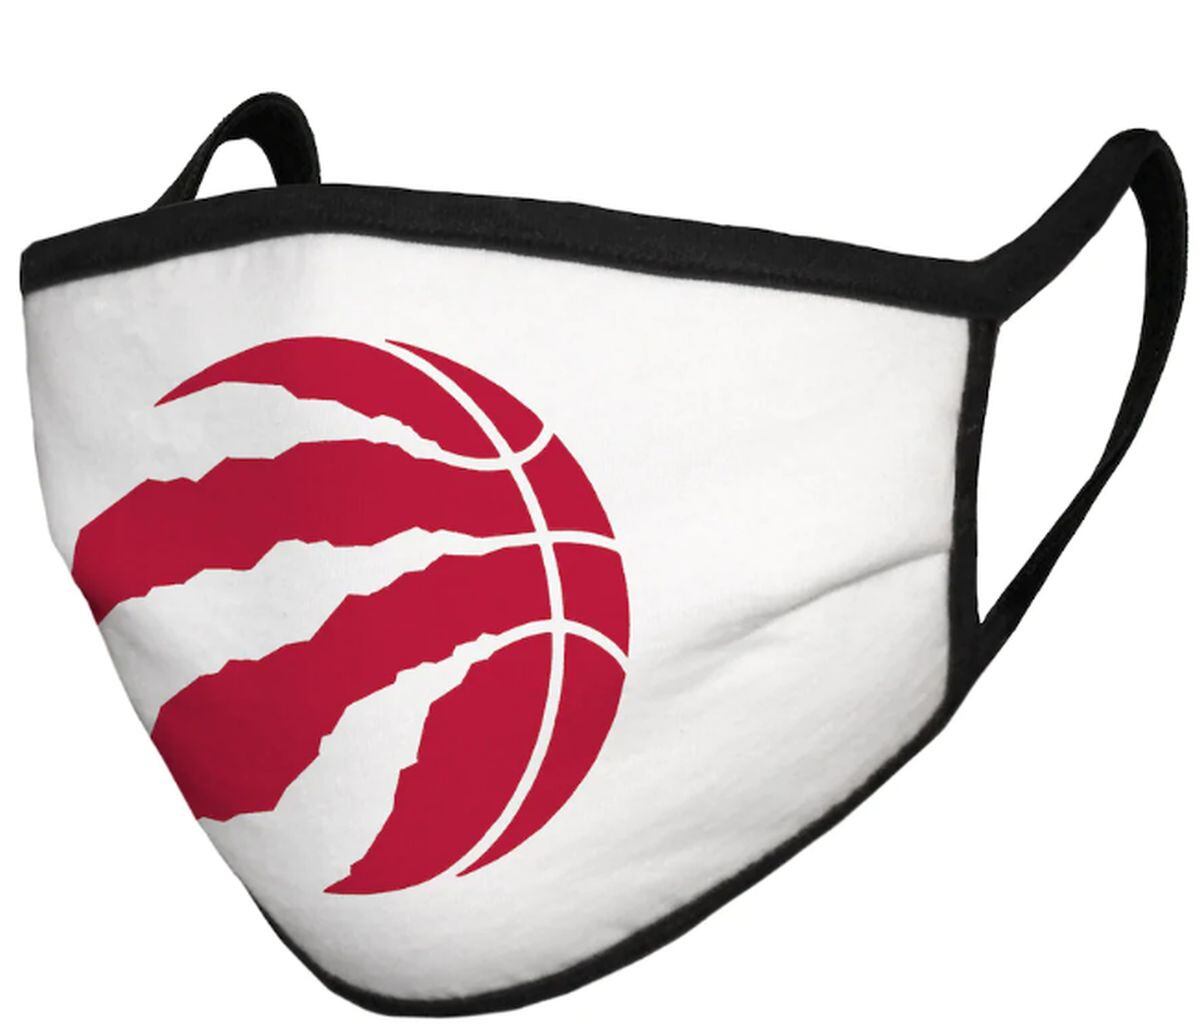 Equipos de la NBA ponen en venta mascarillas con los logos. (Foto: NBAStore.com)